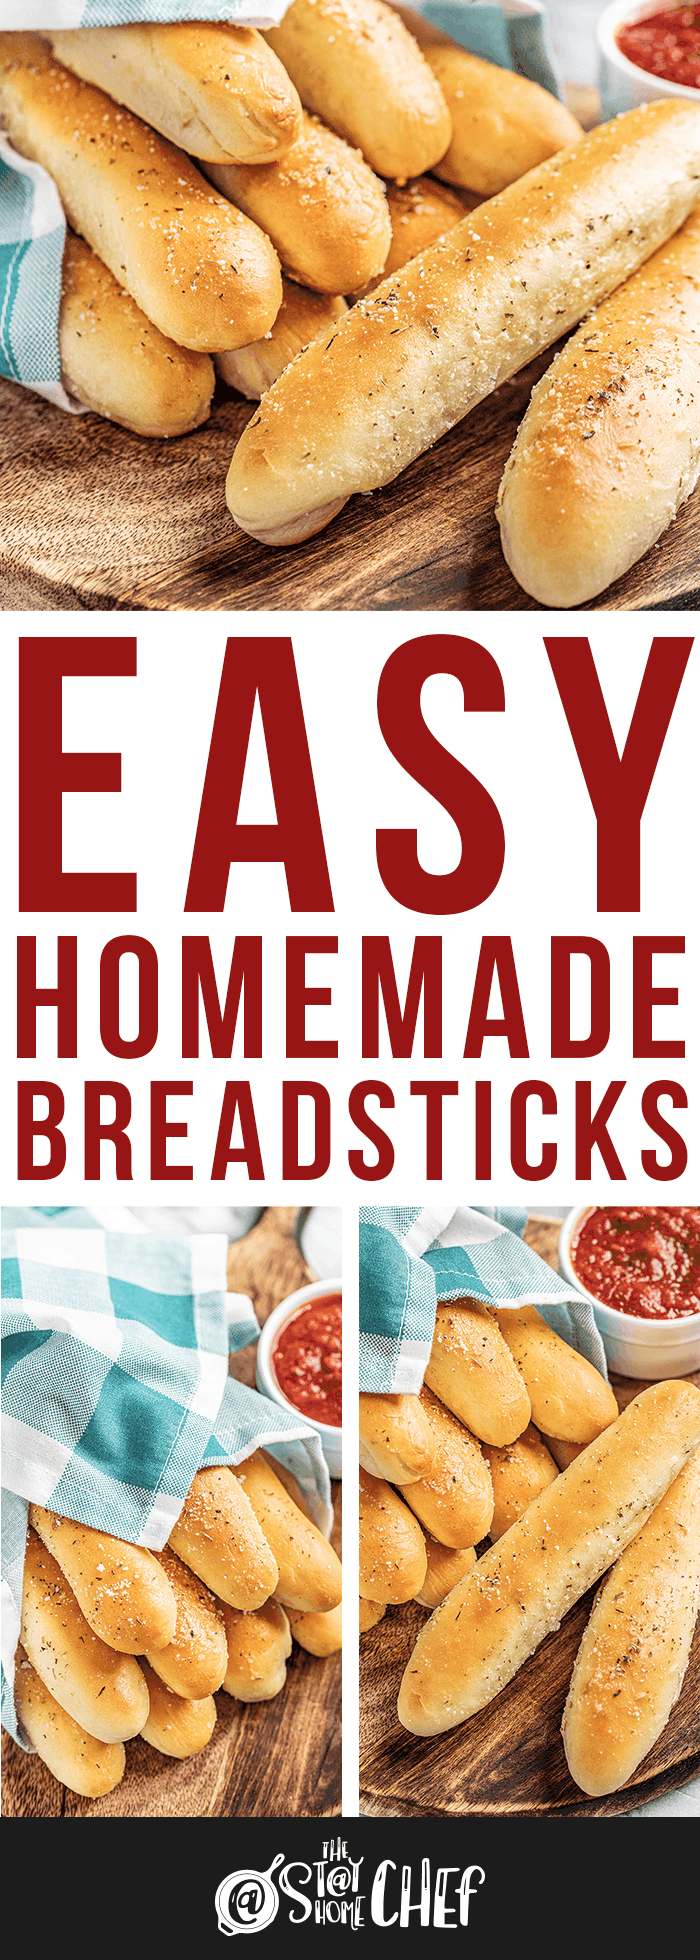 Homemade Breadsticks